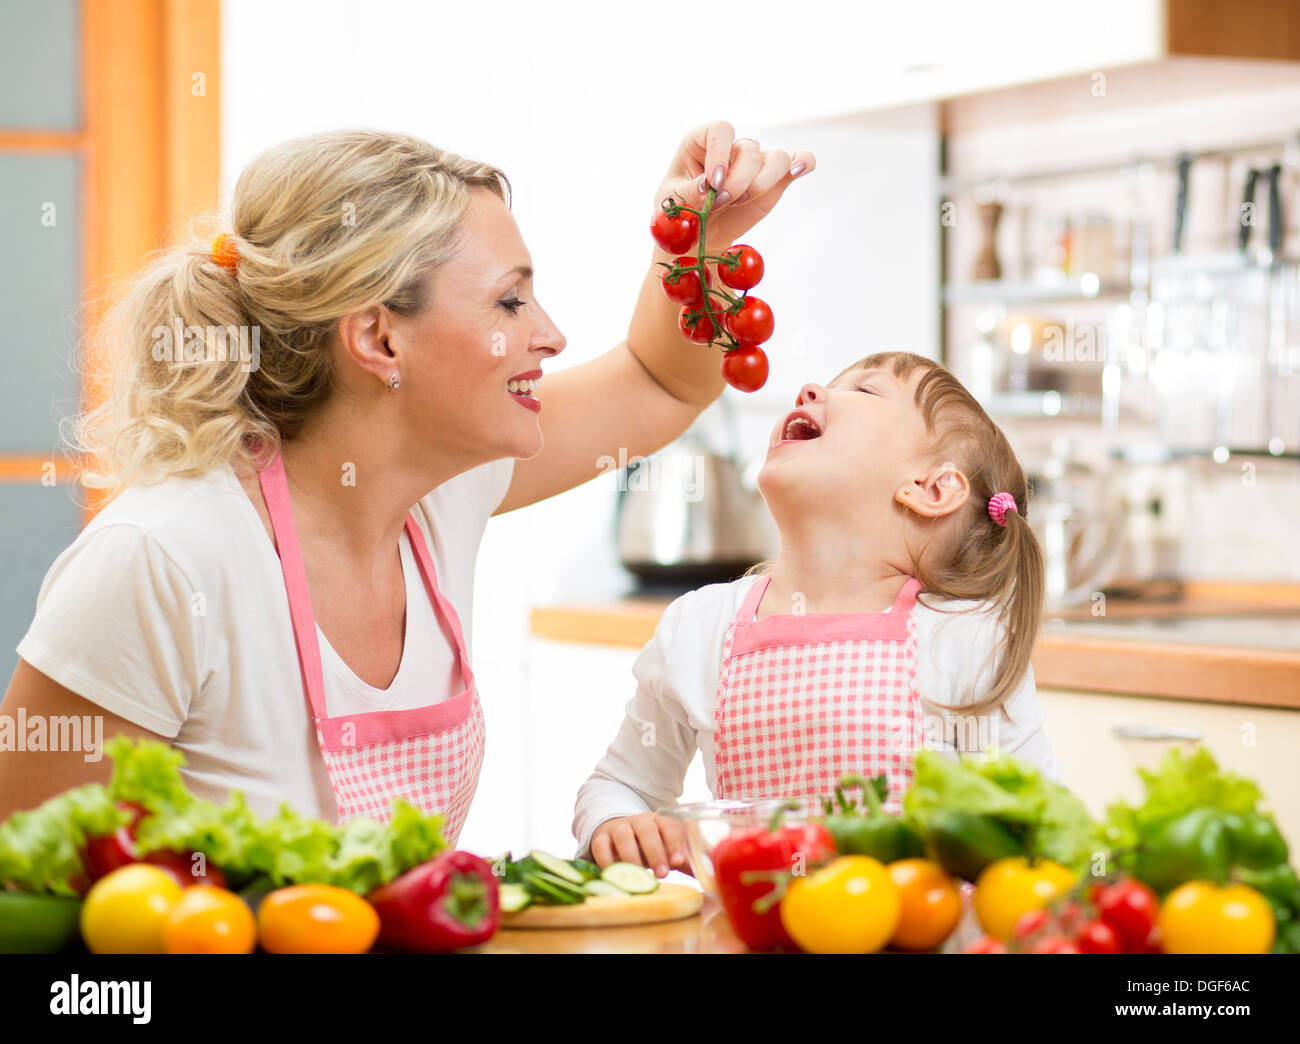 Mutter Vorbereitung Abendessen und Fütterung Kind Tomate in Küche Stockfoto